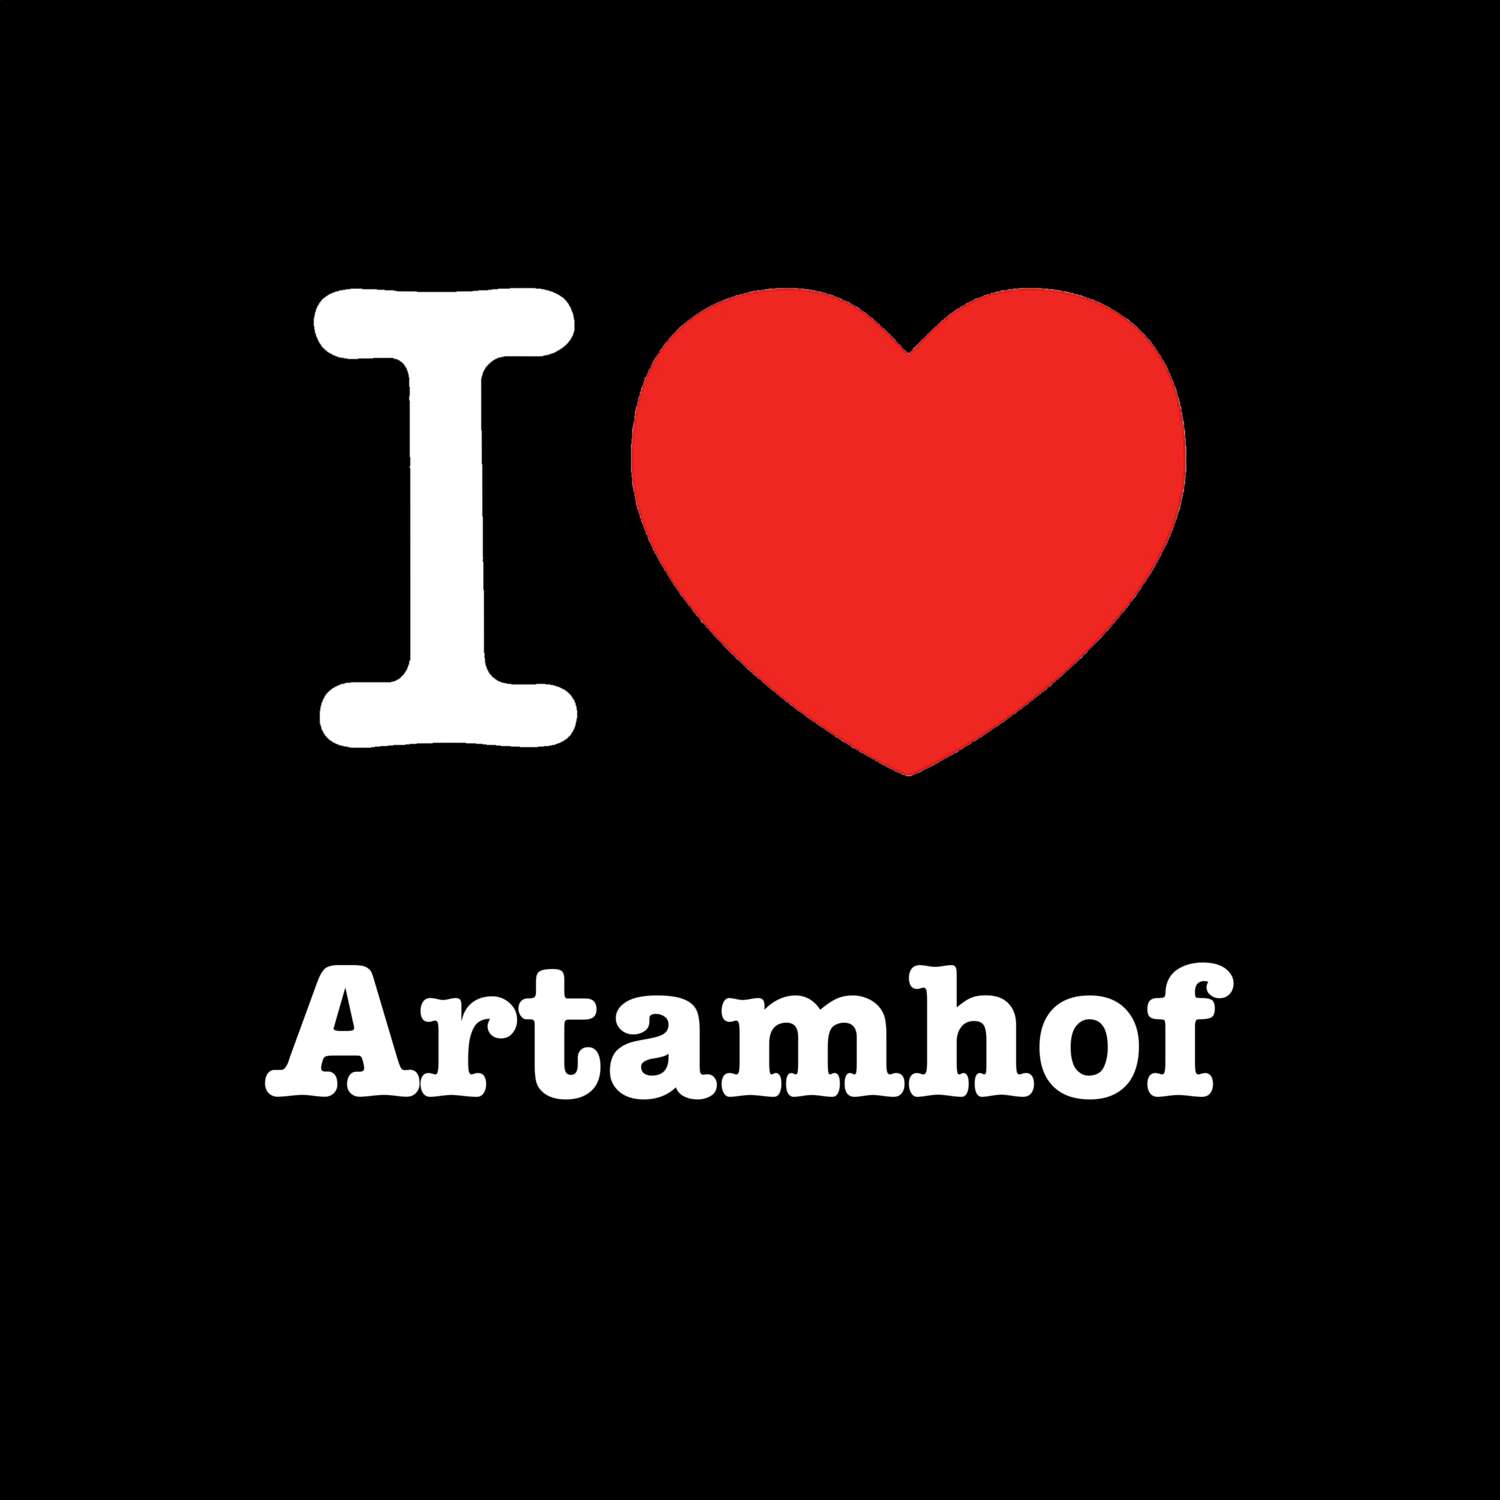 Artamhof T-Shirt »I love«